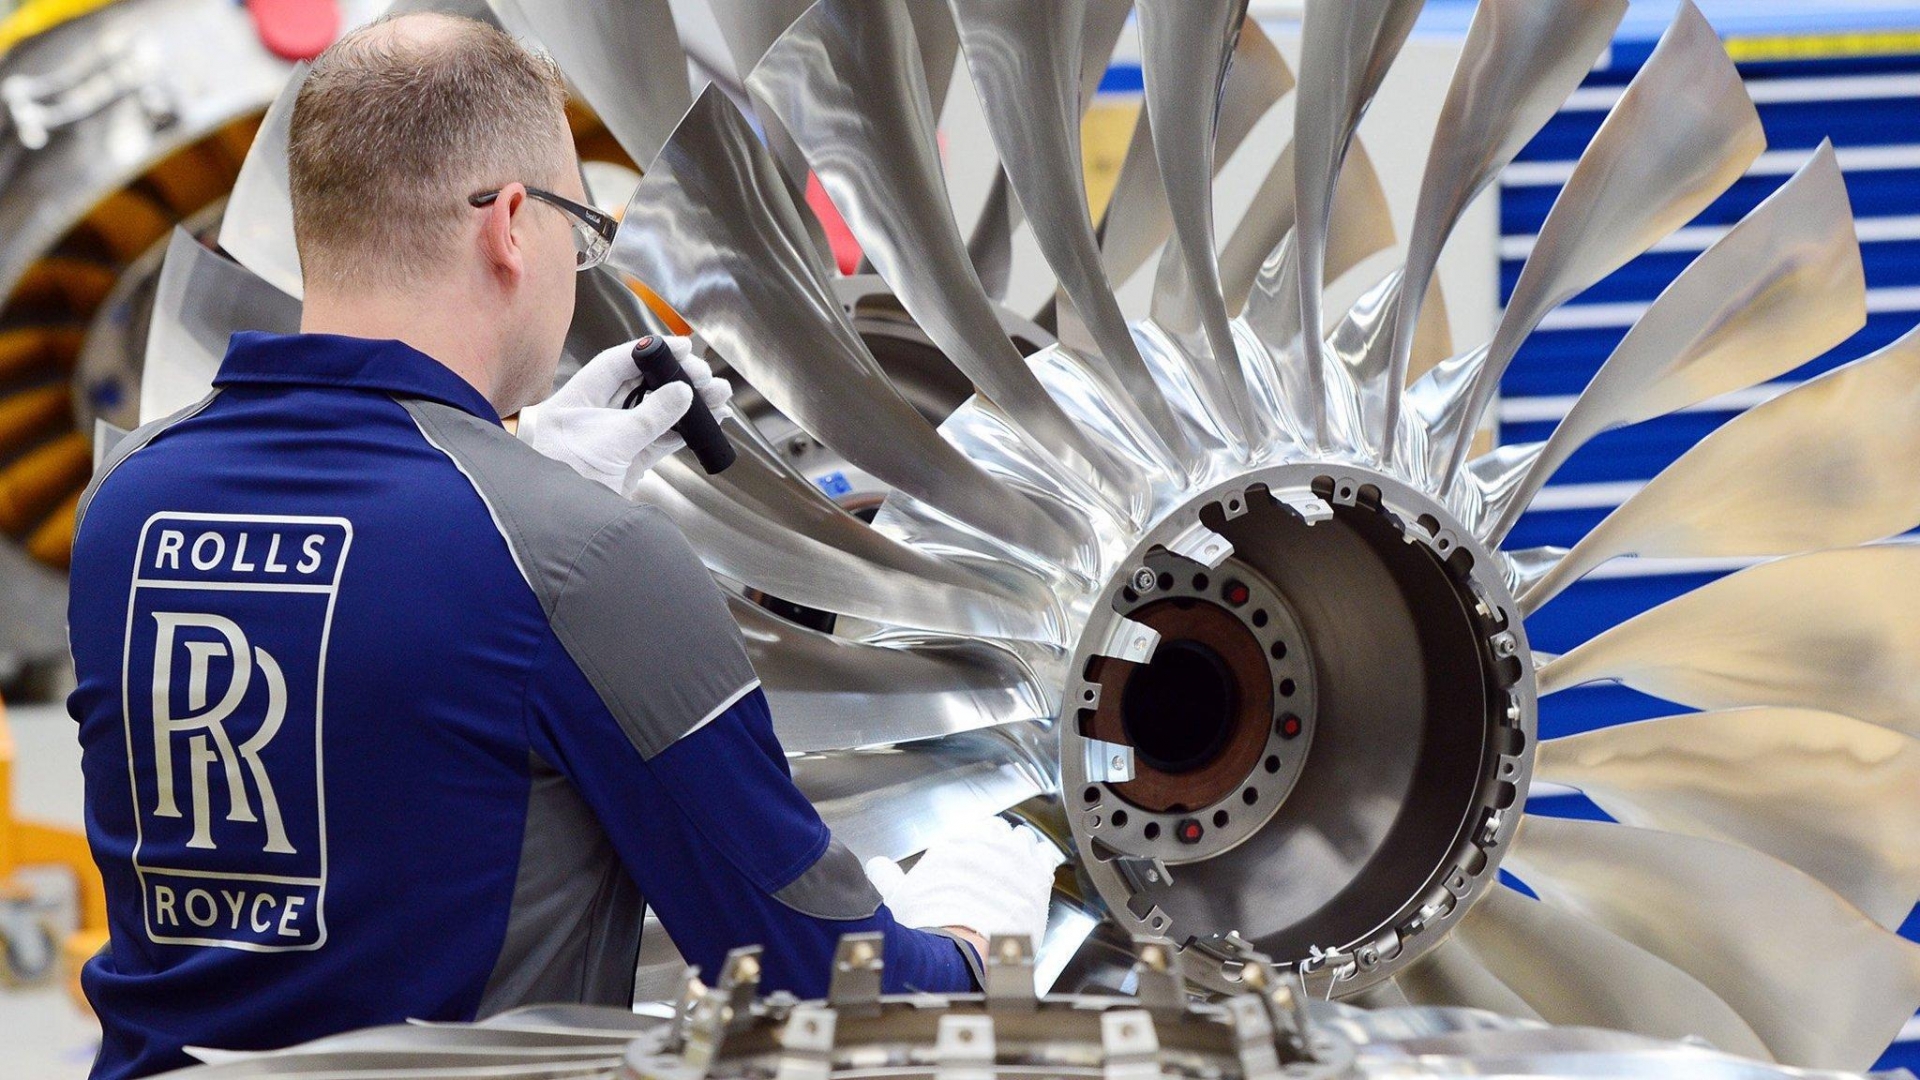 Động cơ mới của Rolls-Royce mang theo bước đột phá trong công nghệ quân sự 485979